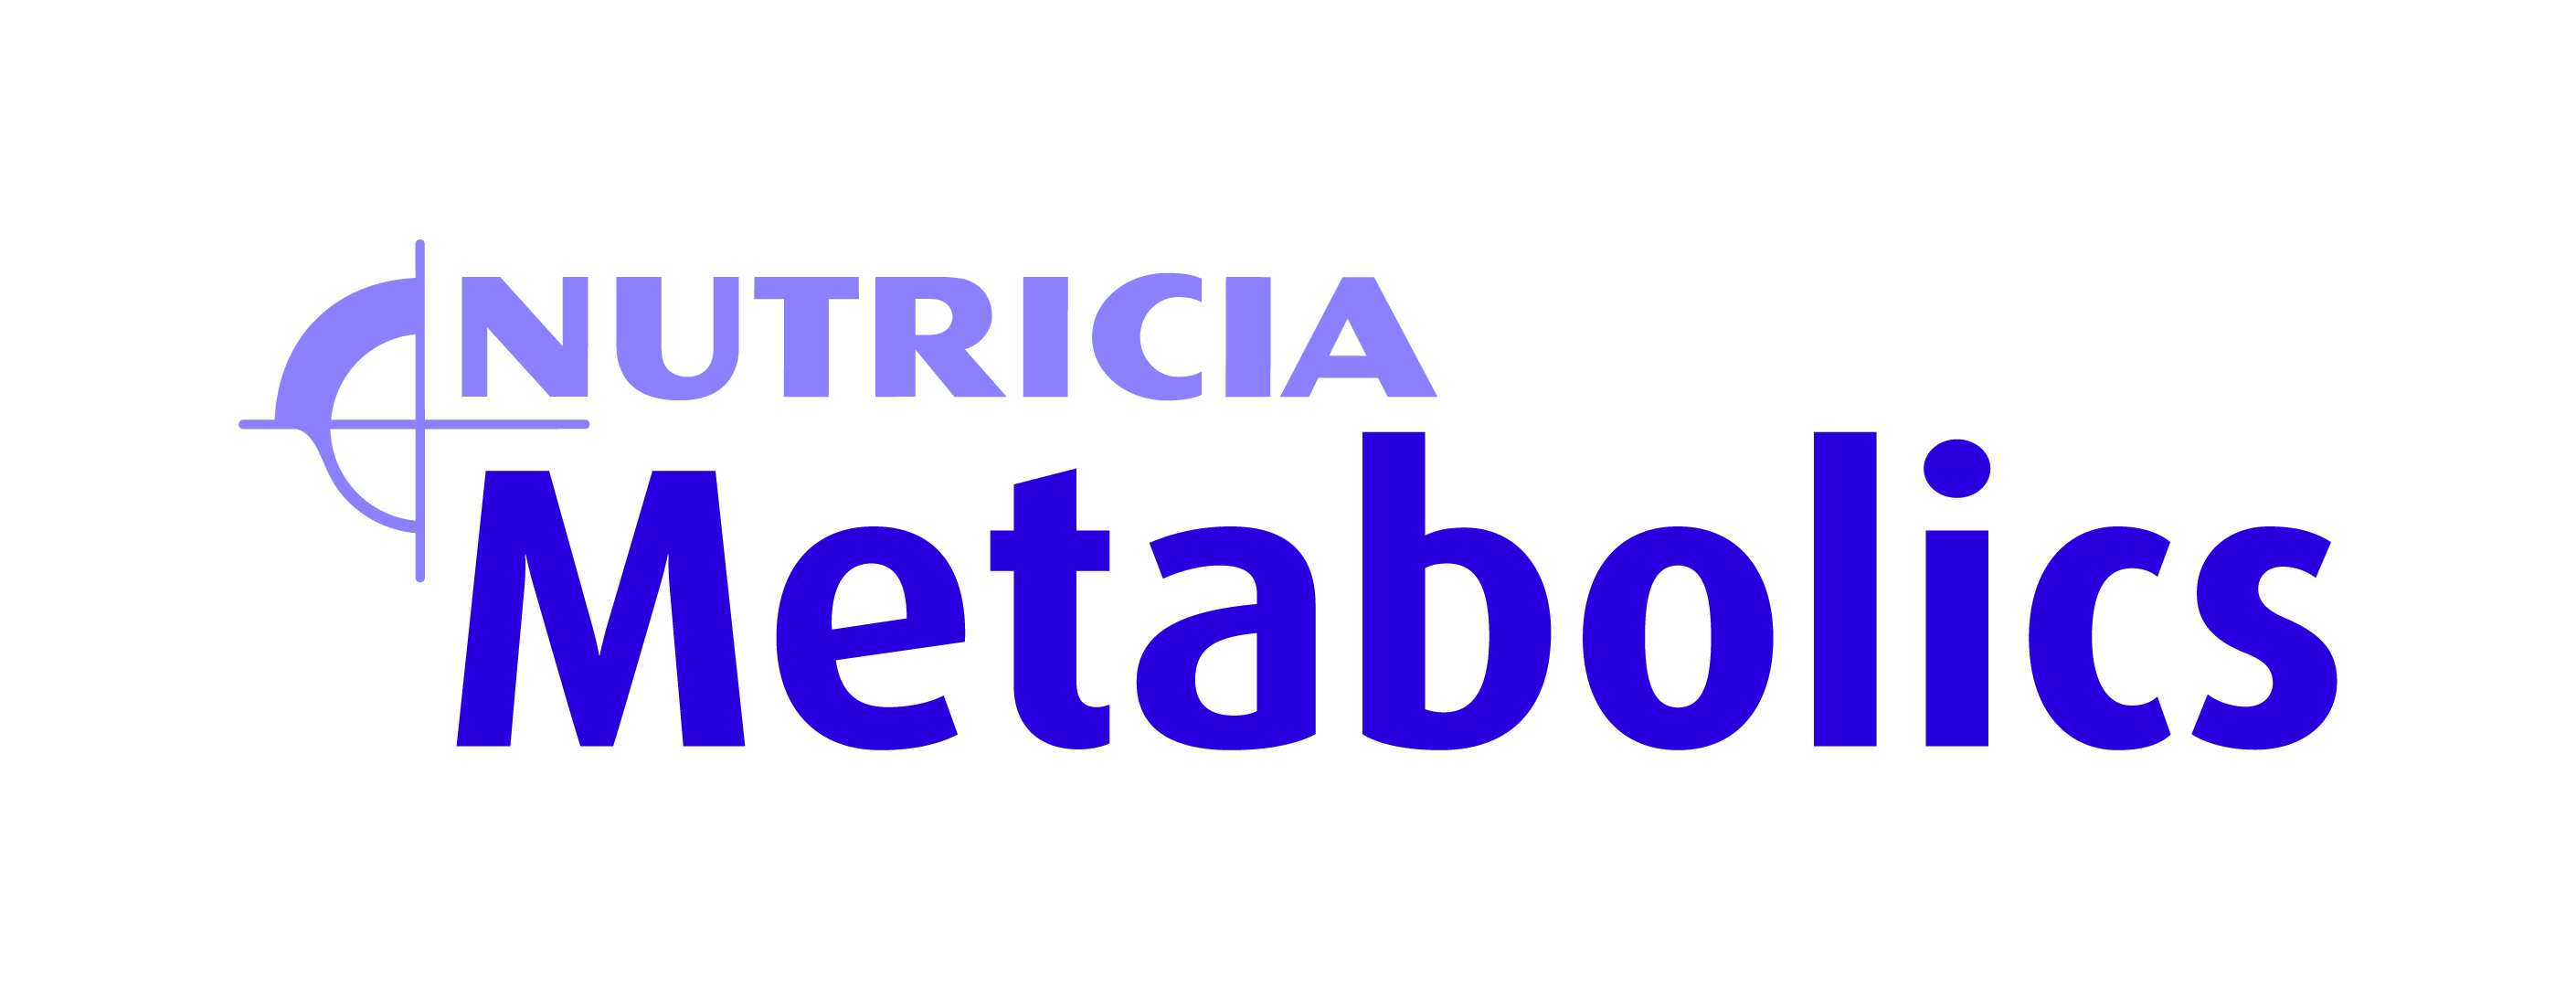 nutricia metabolics logo